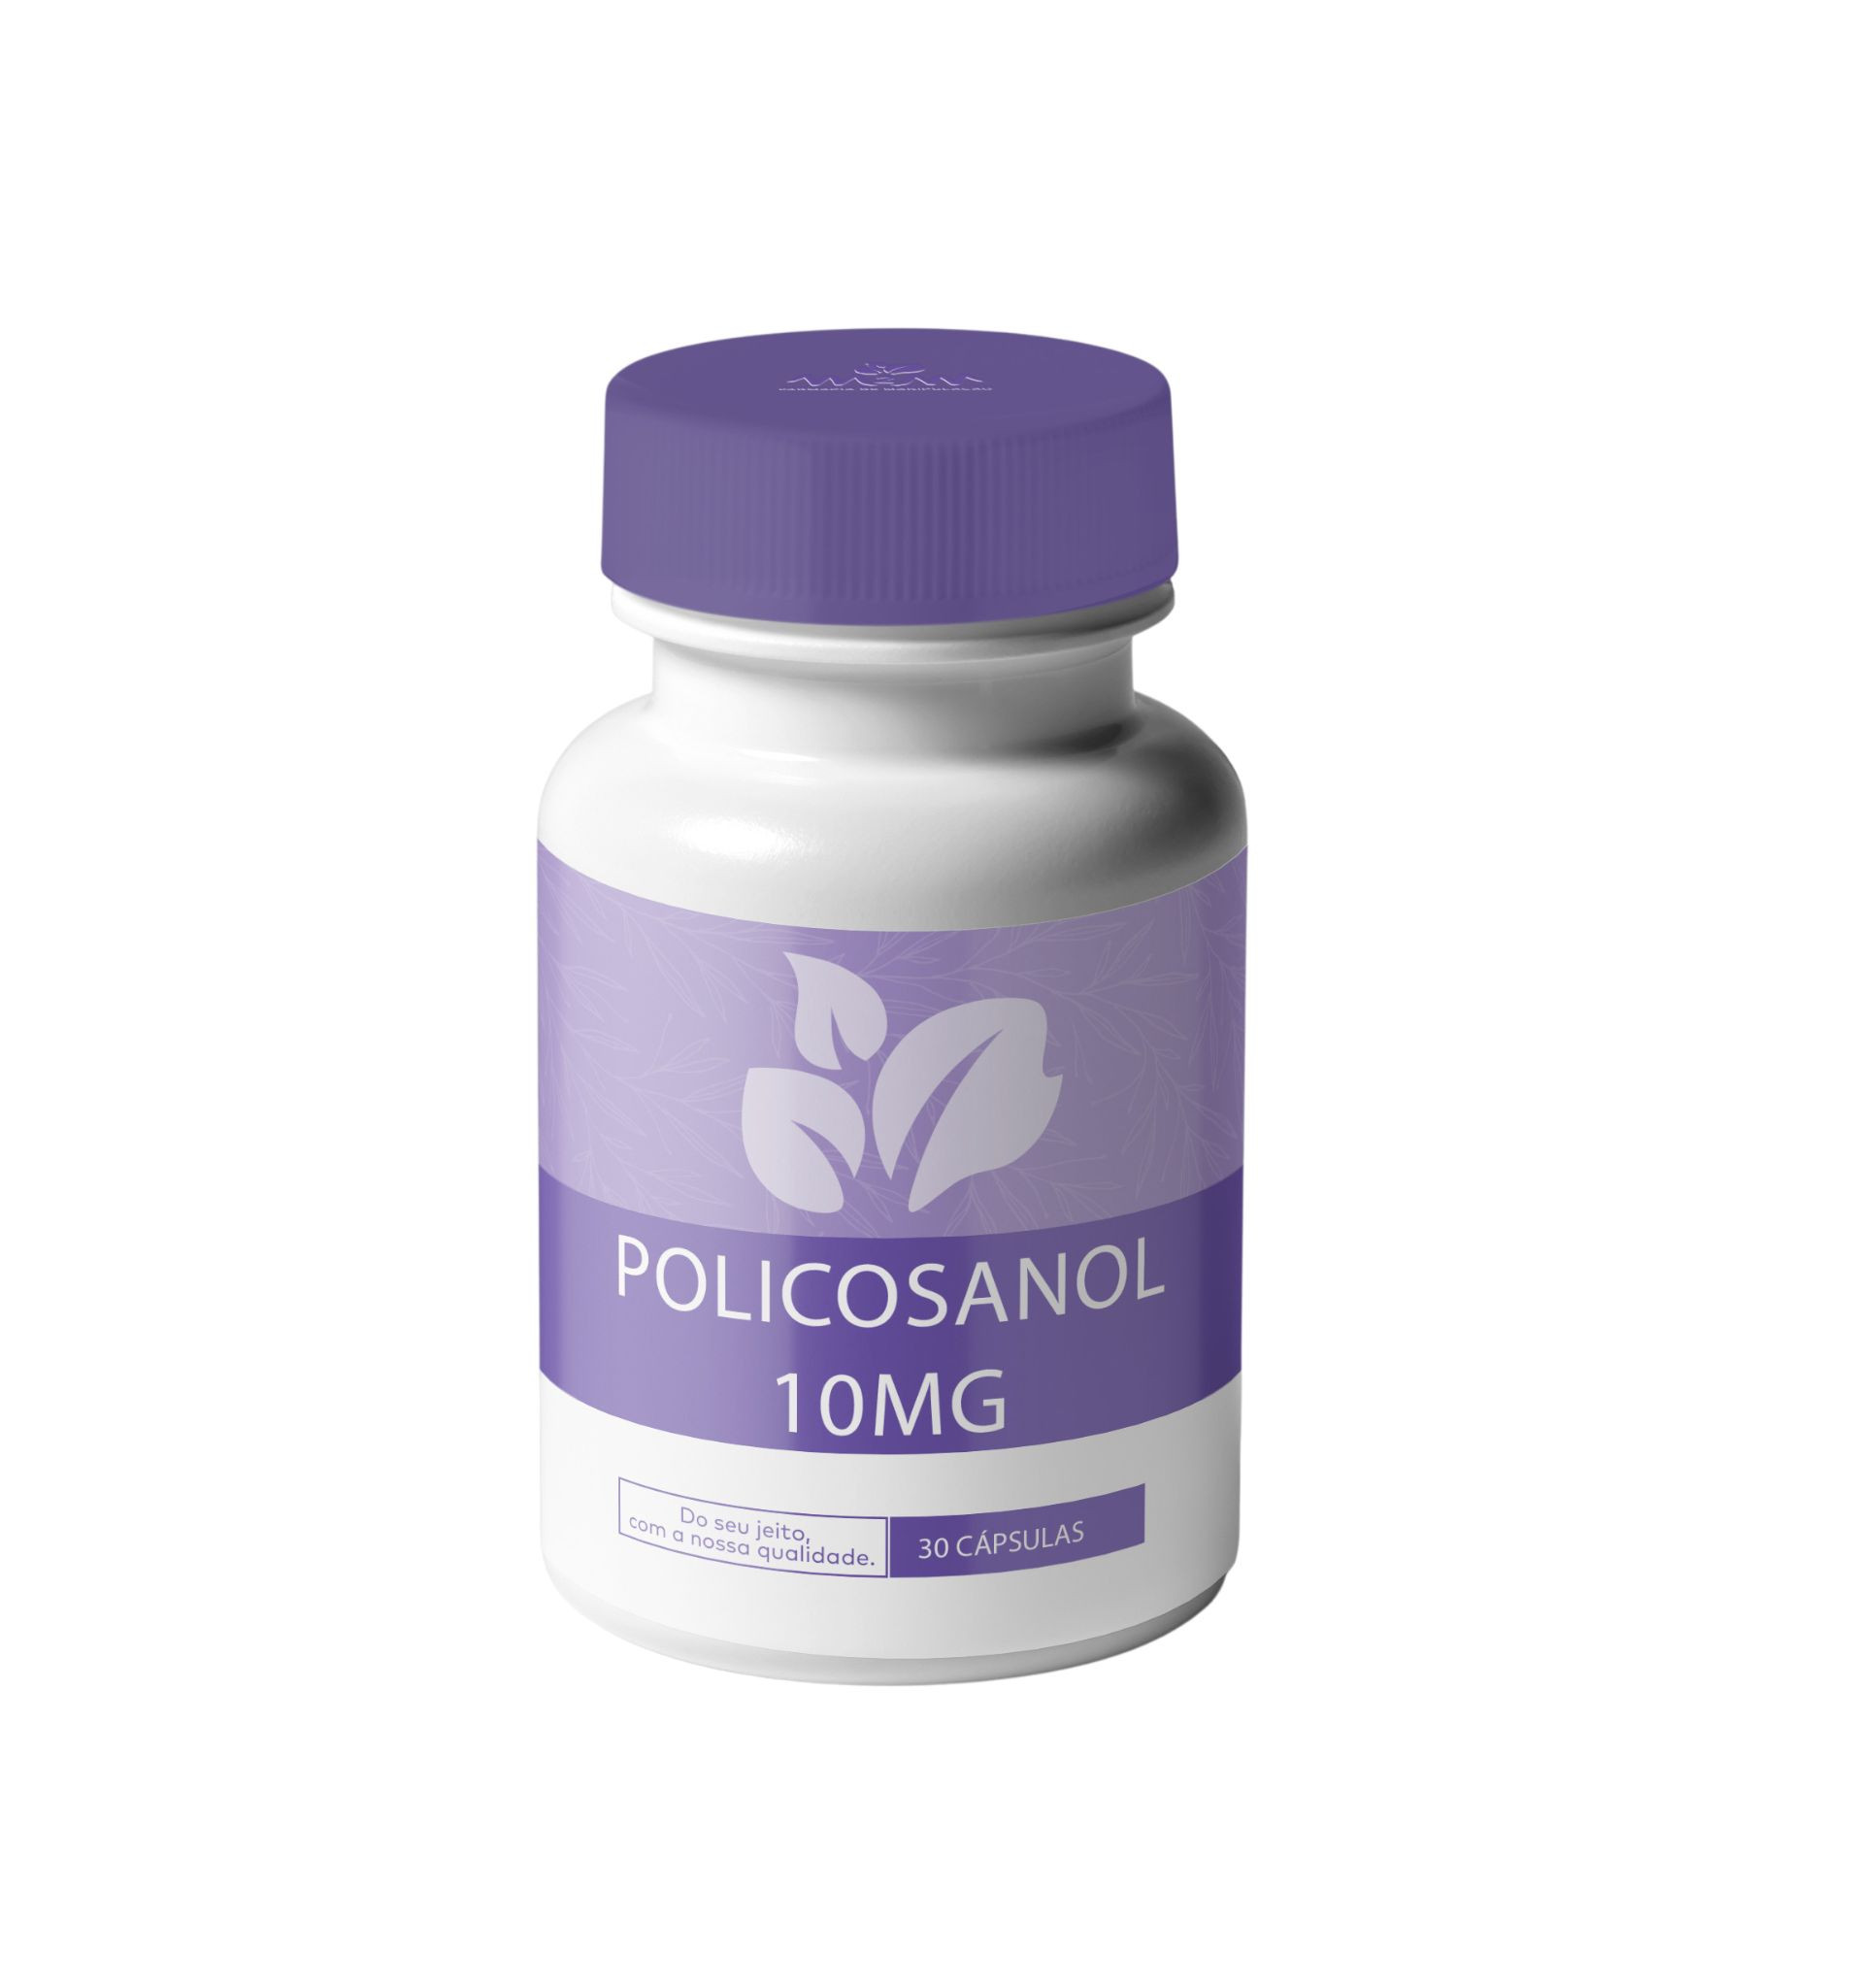 Policosanol 10mg - Cápsulas para redução dos níveis de colesterol